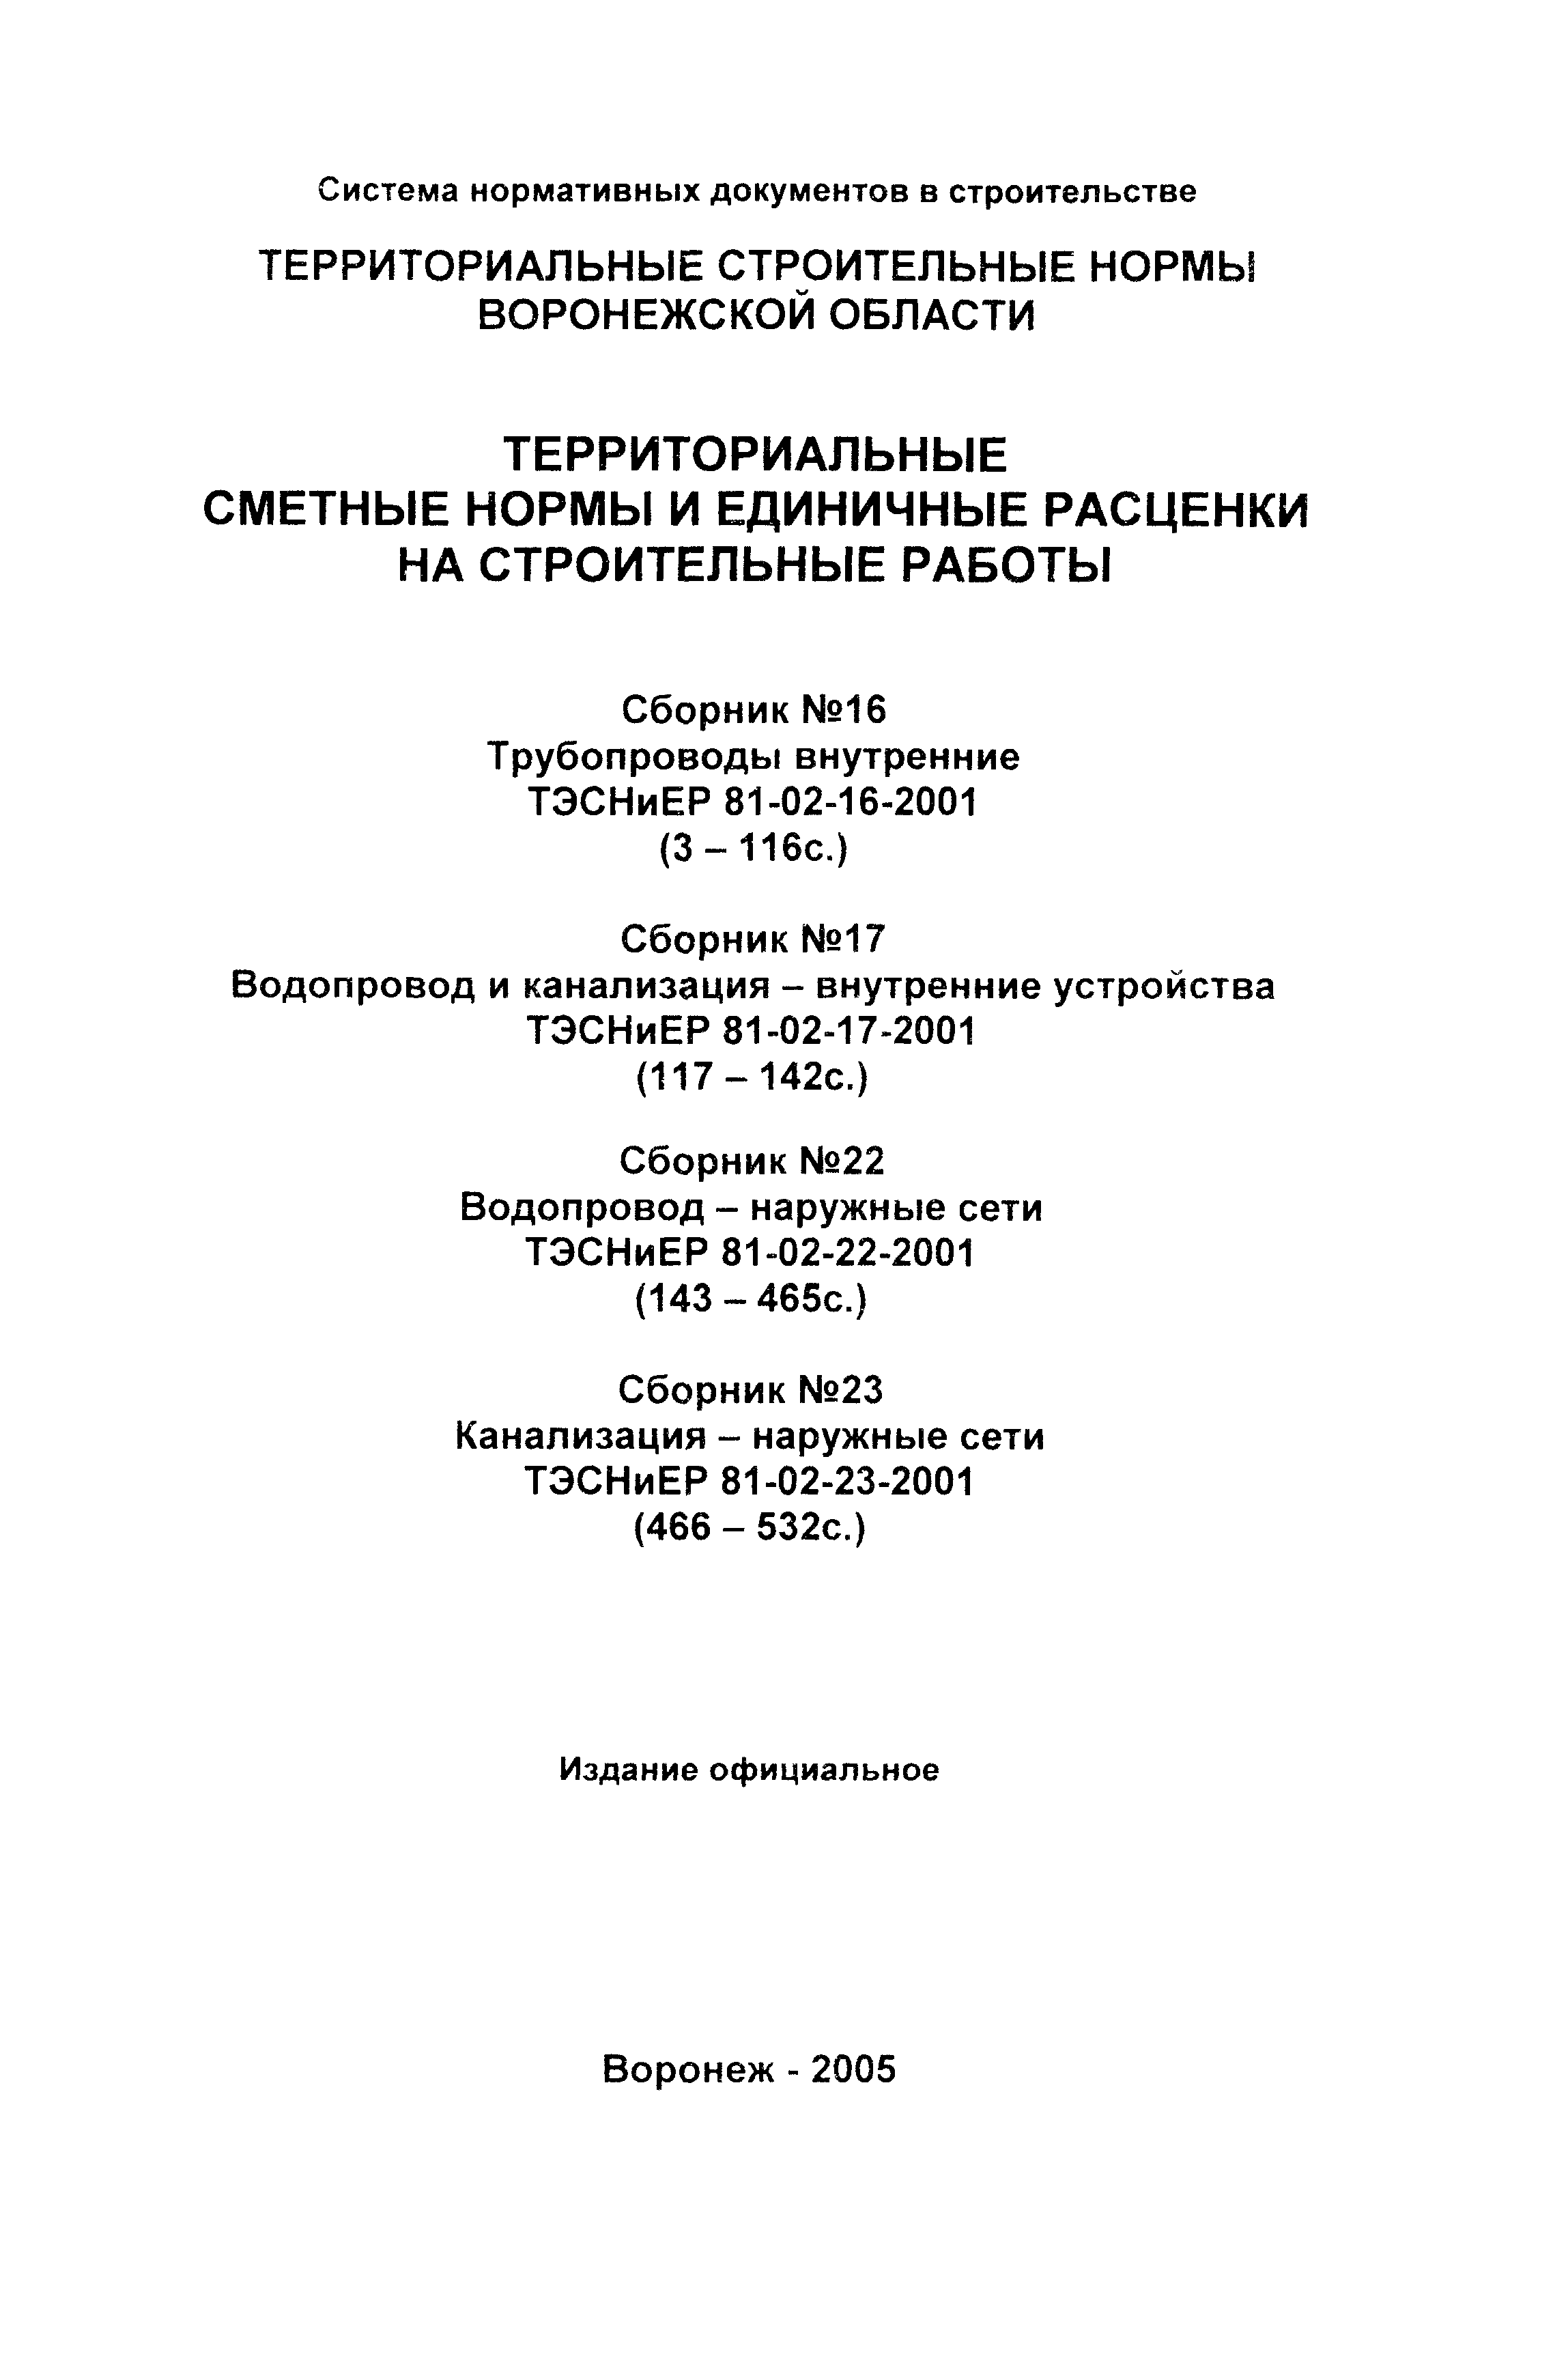 ТЭСНиЕР Воронежской области 81-02-22-2001